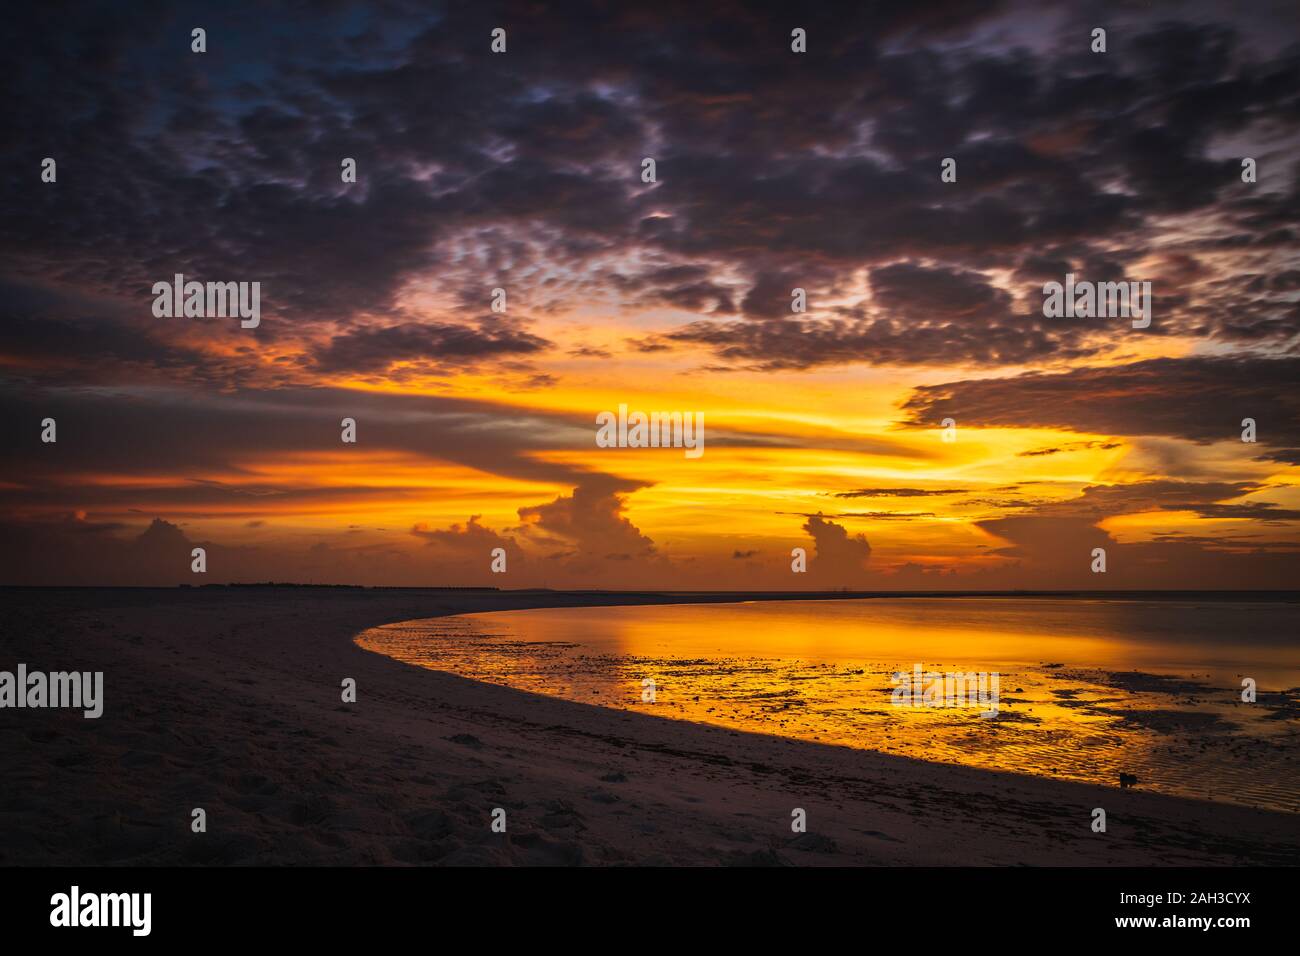 Sonnenuntergang auf den Malediven mit Reflexion der Sonne im Wasser und blau und orange farbige Wolken im Himmel Stockfoto